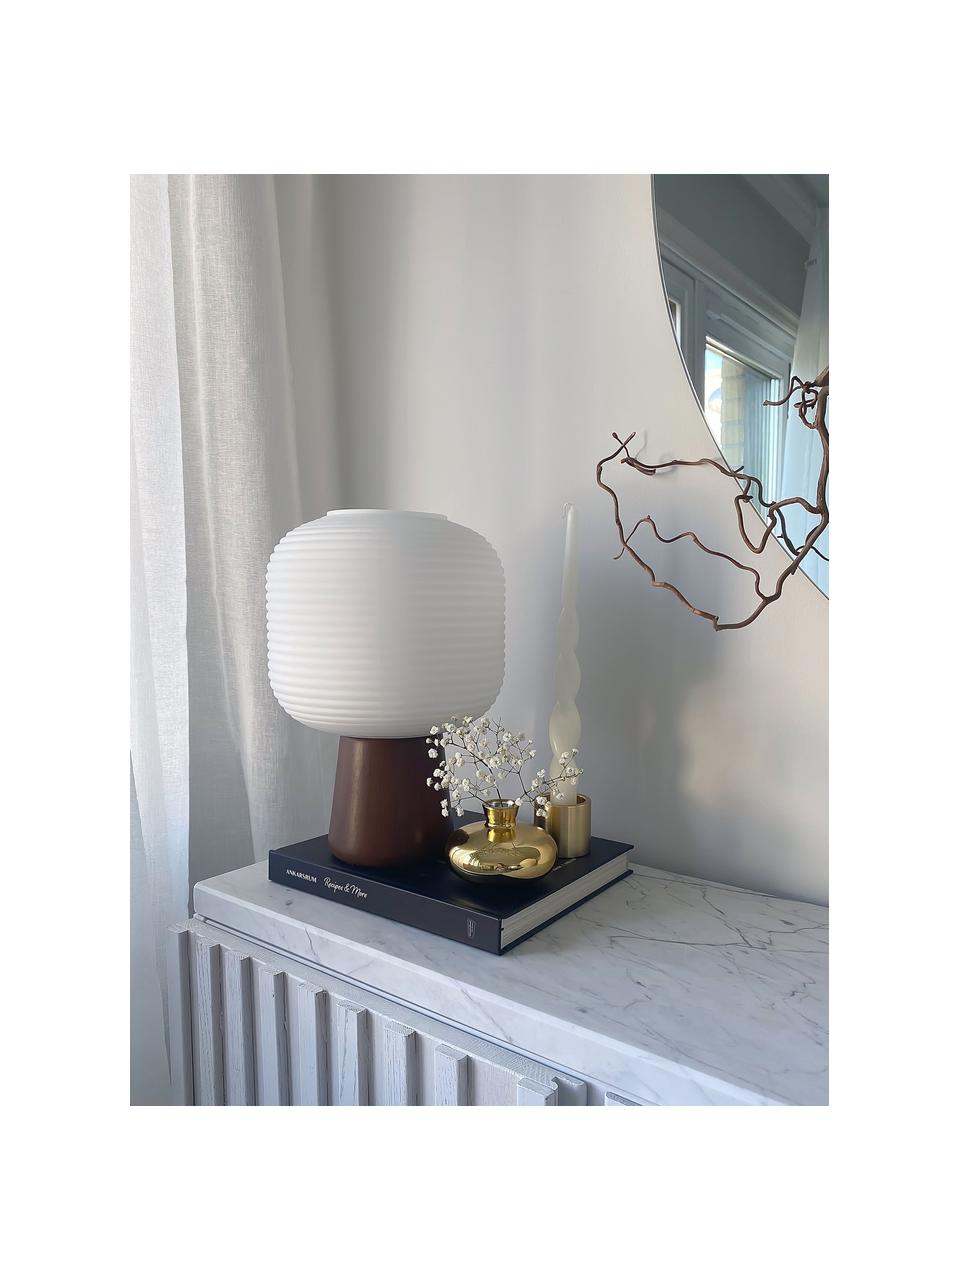 Kleine Tischlampe Aura, Lampenschirm: Glas, Lampenfuß: Holz, Braun, Weiß, Ø 20 x H 29 cm